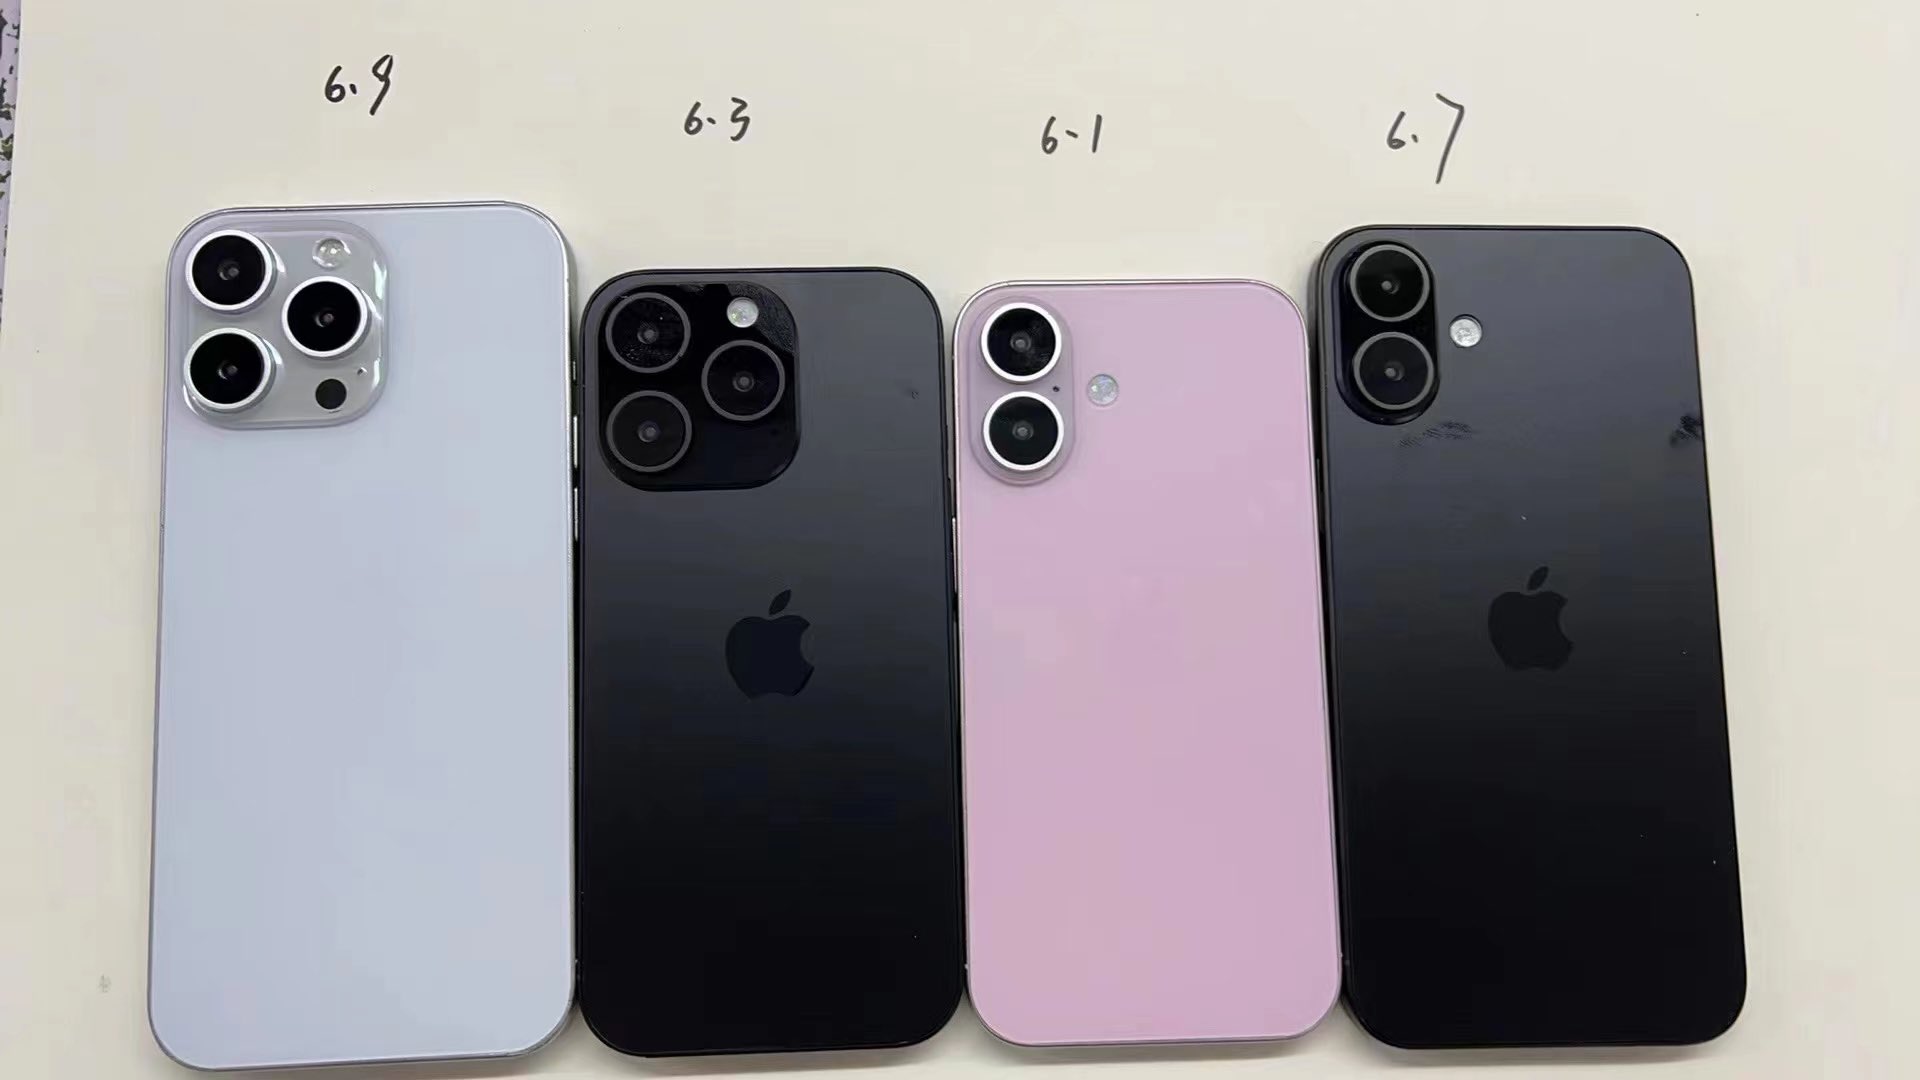 Üstlerinde boyutları yazılı olan dört adet iPhone 16 kuklası olduğu iddia edildi.